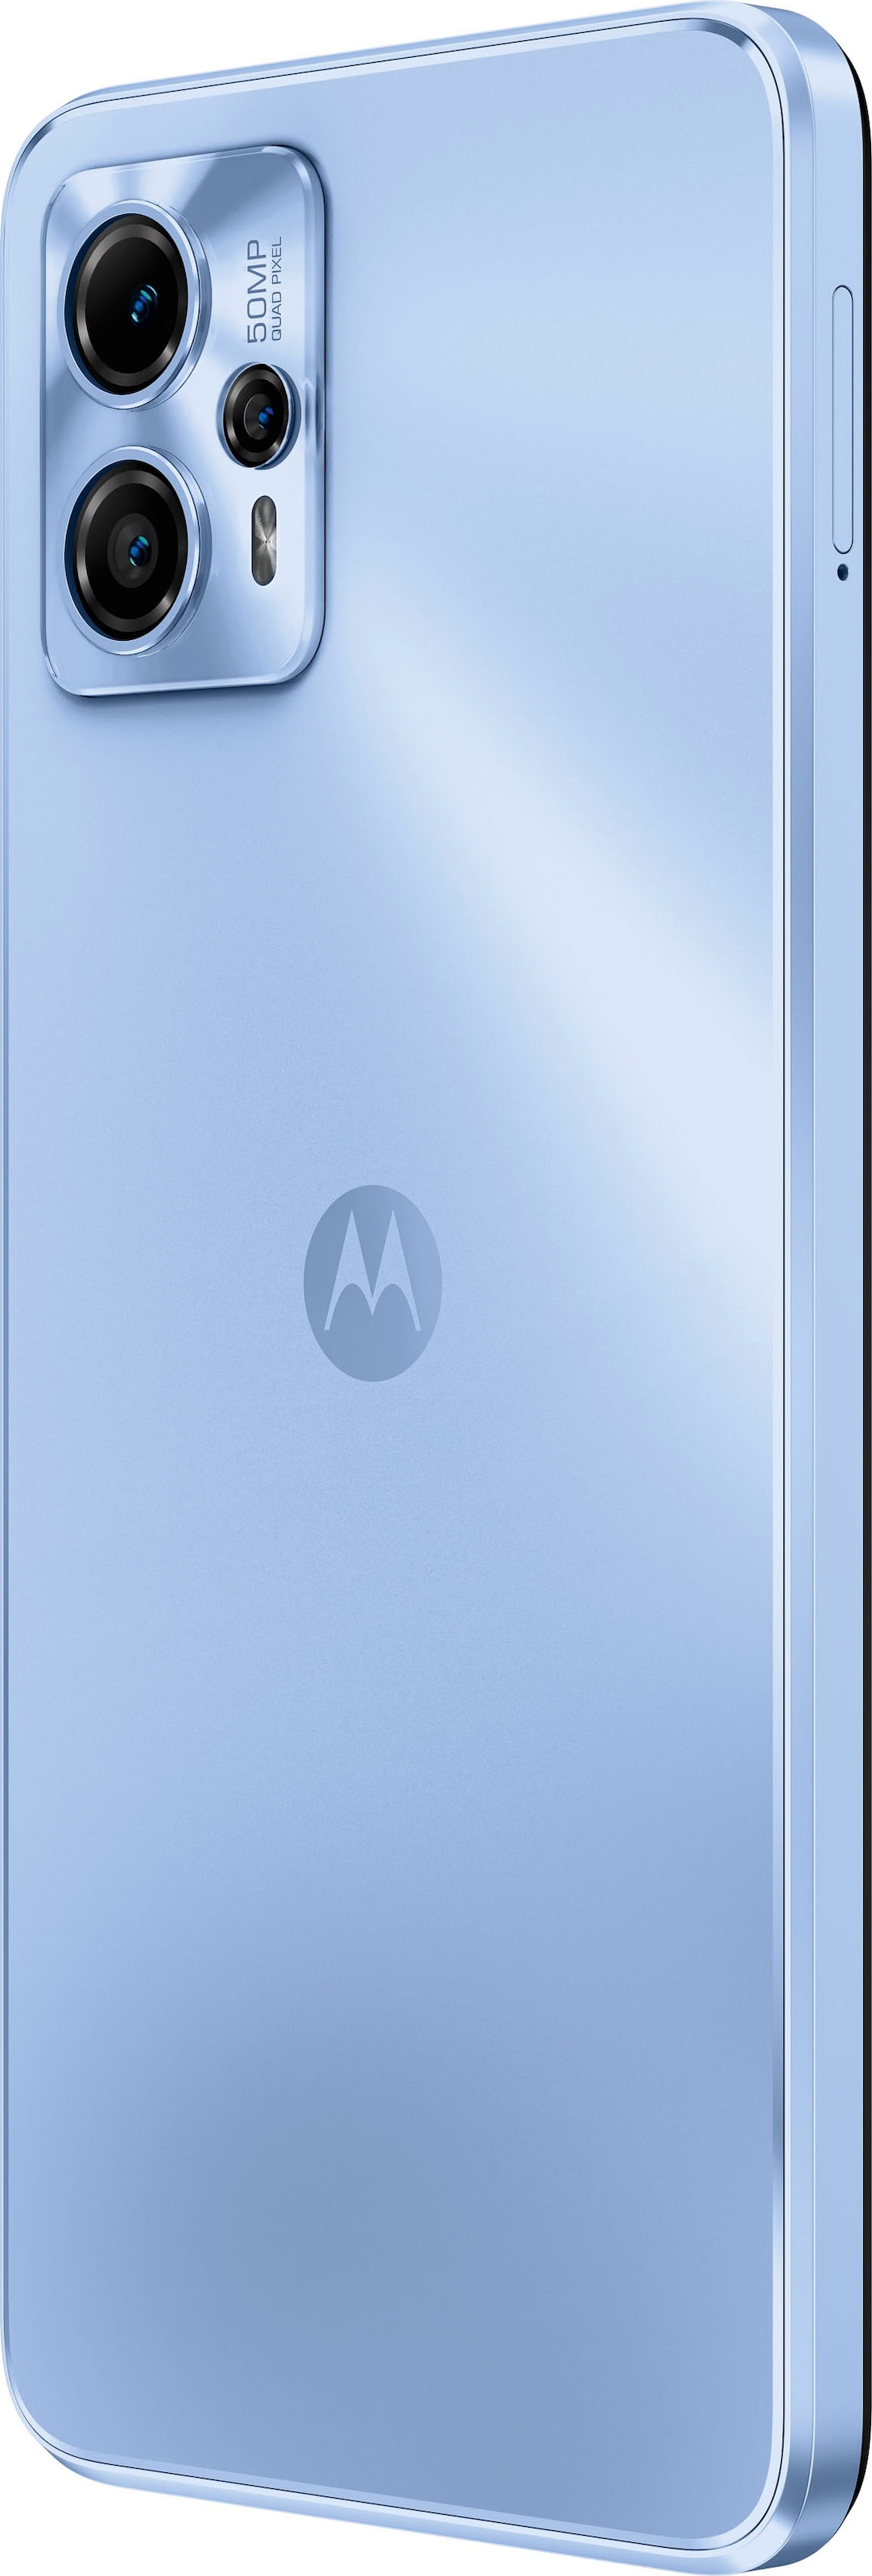 Motorola Smartphone »g13«, lavender blue, 16,56 cm/6,52 Zoll, 128 GB  Speicherplatz, 50 MP Kamera online kaufen | alle Smartphones